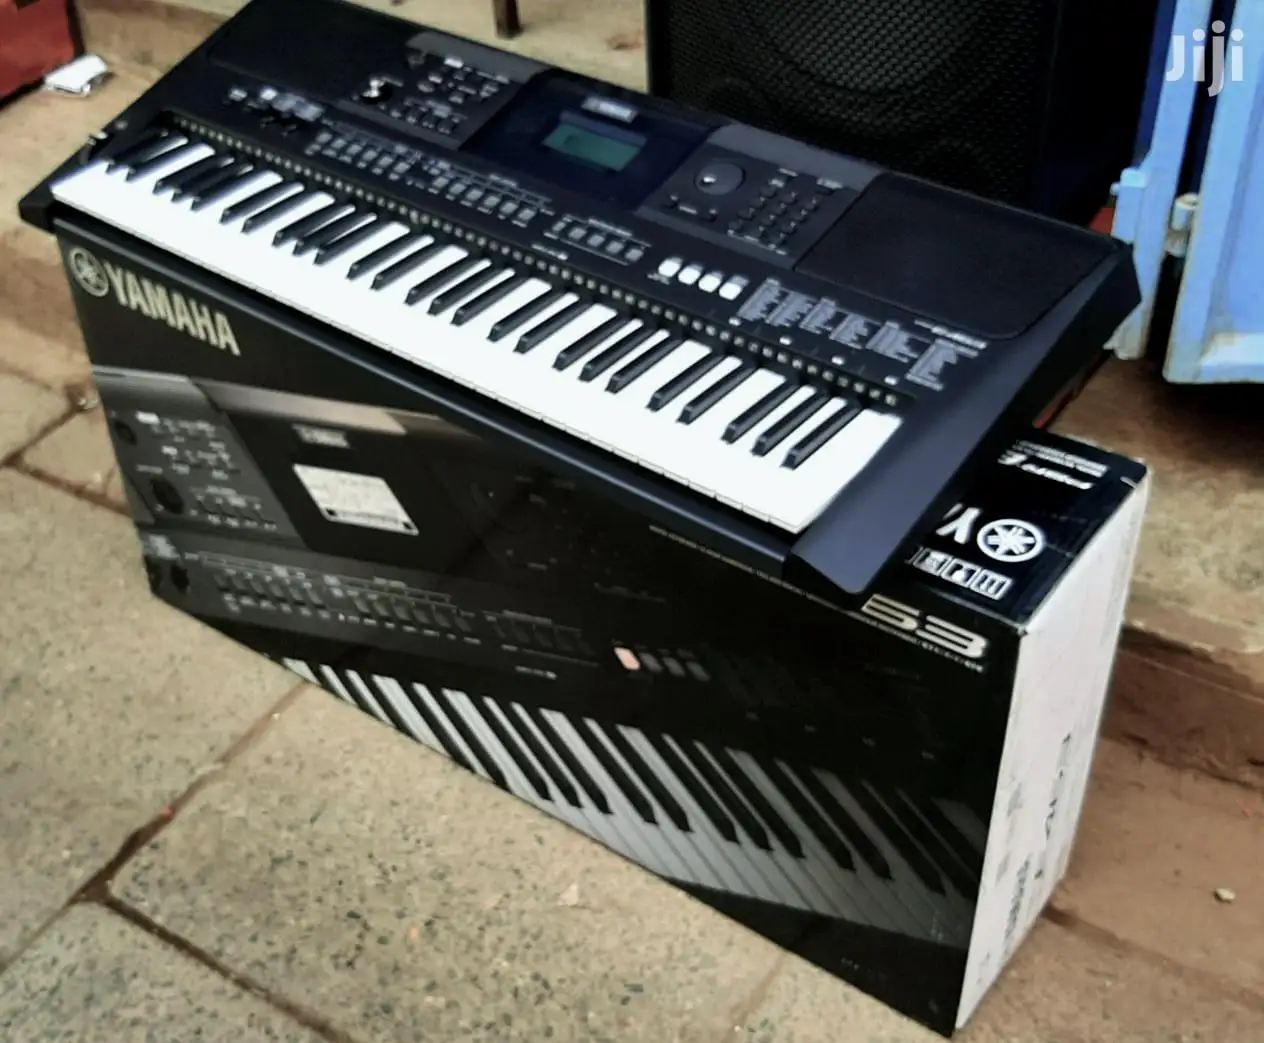 מכירות הקיץ הנחה על יוקרה אותנטית מוטיב XF8 88 מפתח פסנתר, סינתיסייזר מקלדת תחנת עבודה יסודות צרור w - 0